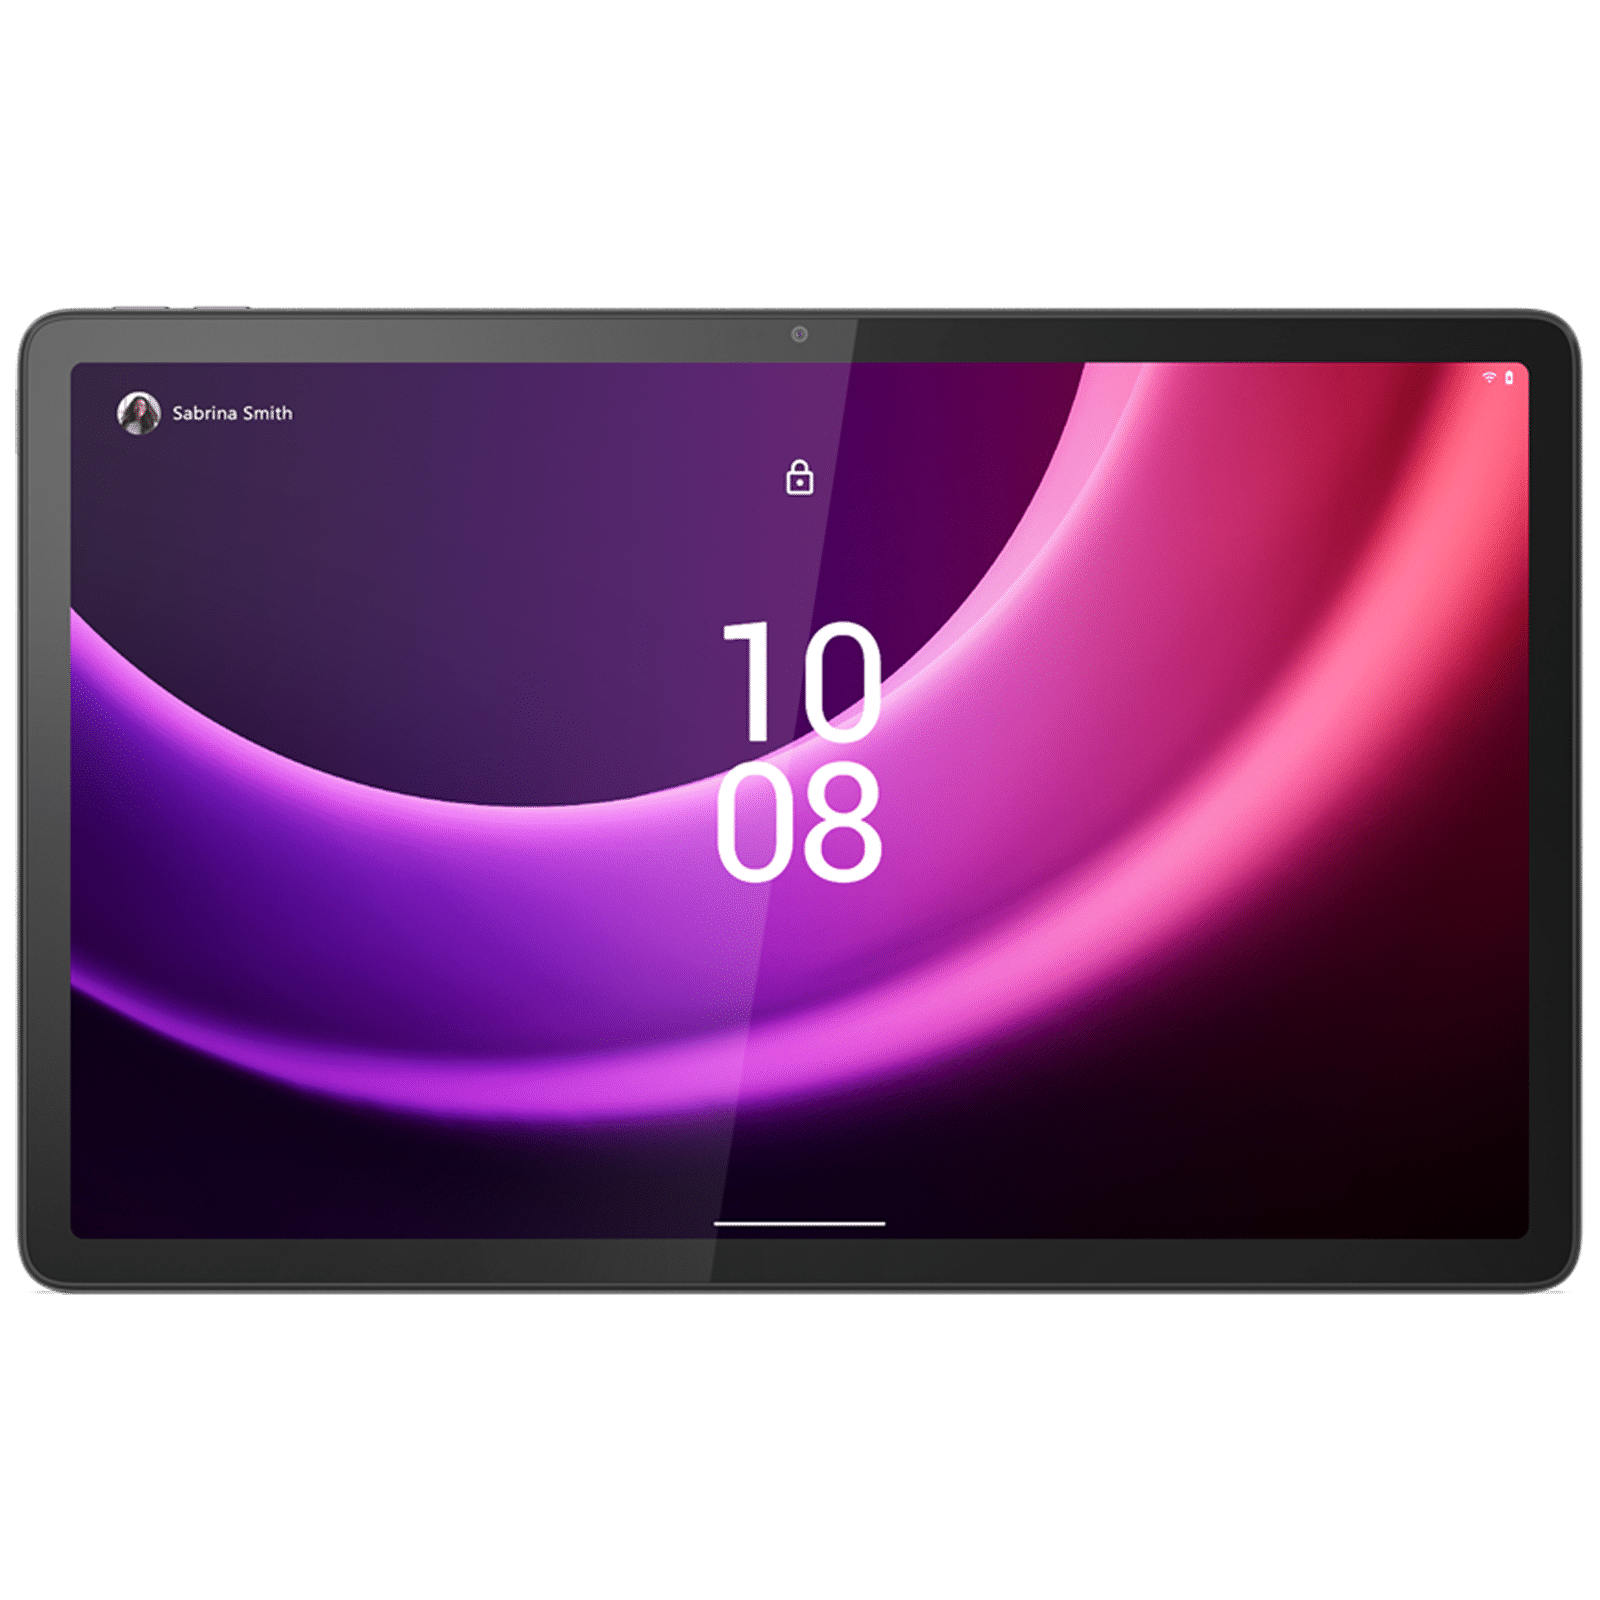 Lenovo Tab P11 5G, Versatile & entertaining 5G tablet